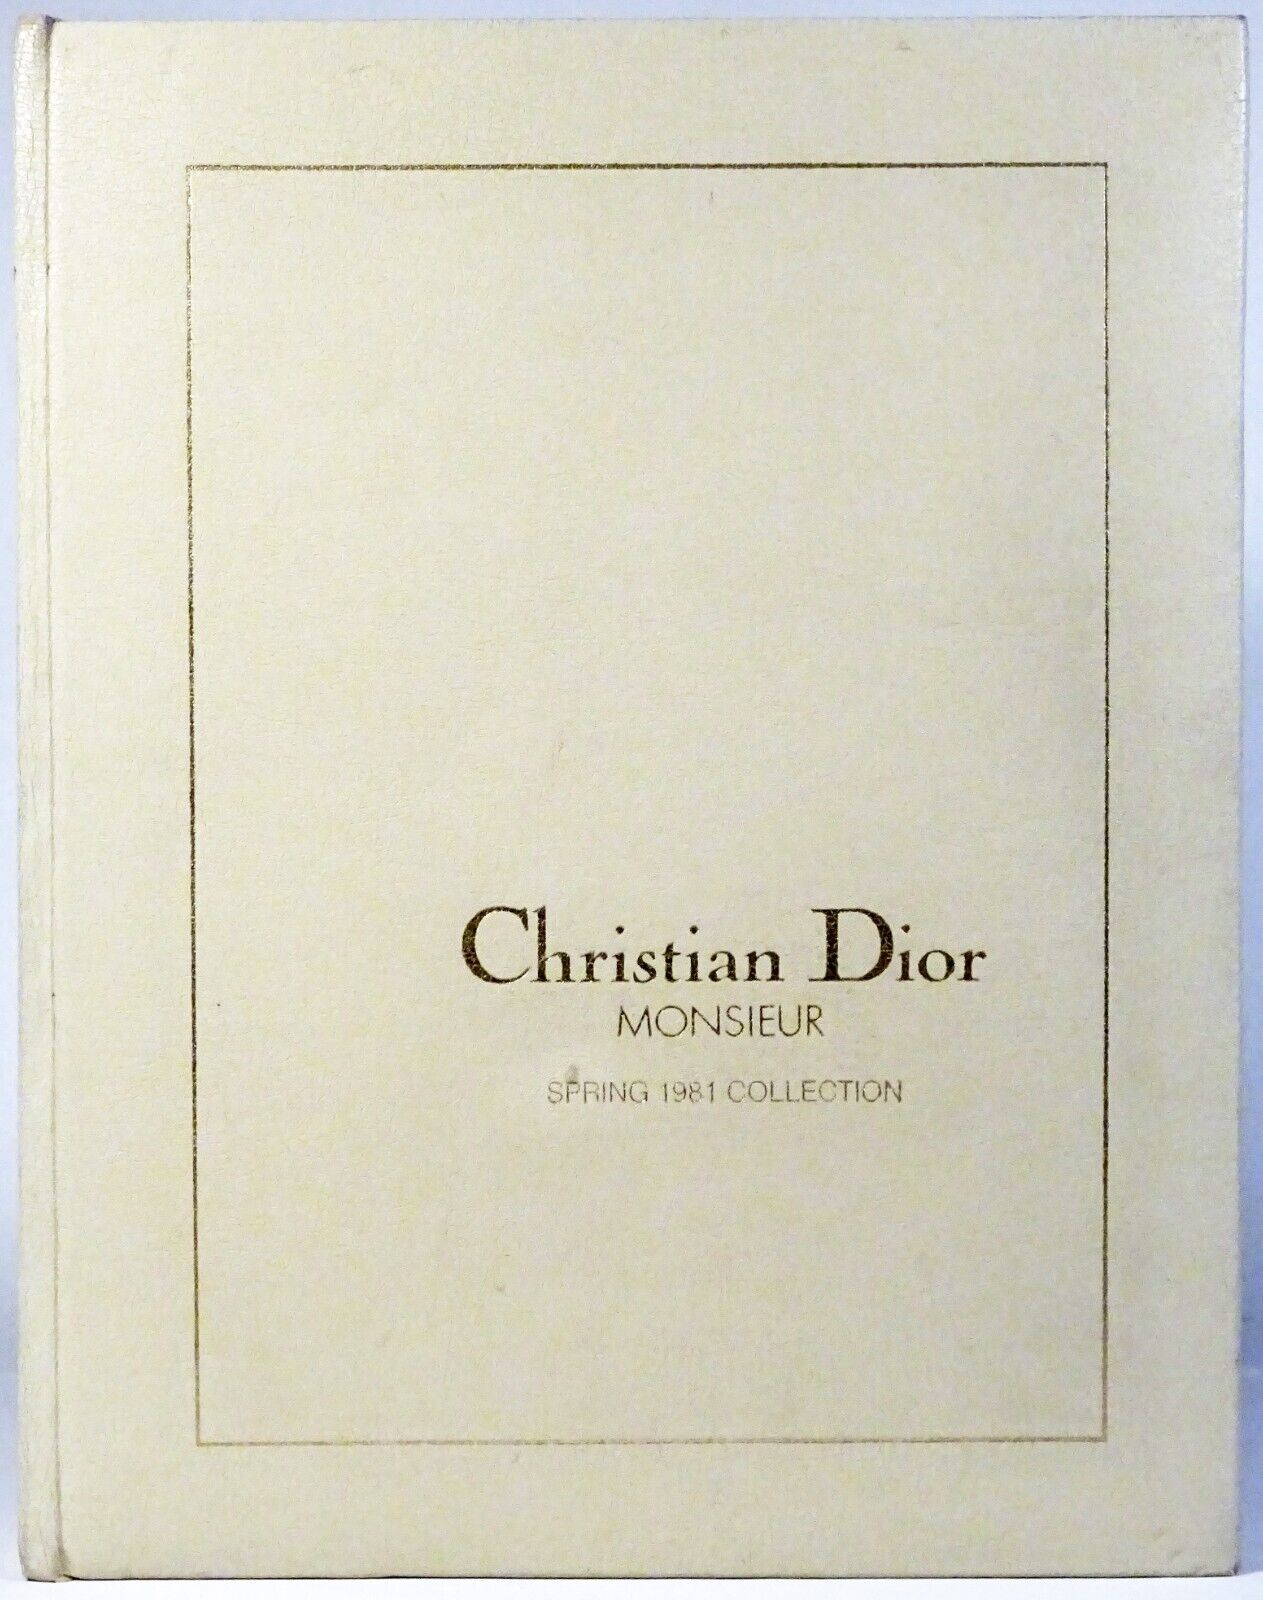 RARE Vintage \'81 CHRISTIAN DIOR MONSIEUR Dealer-PROMOTIONAL Leather Book-Catalog